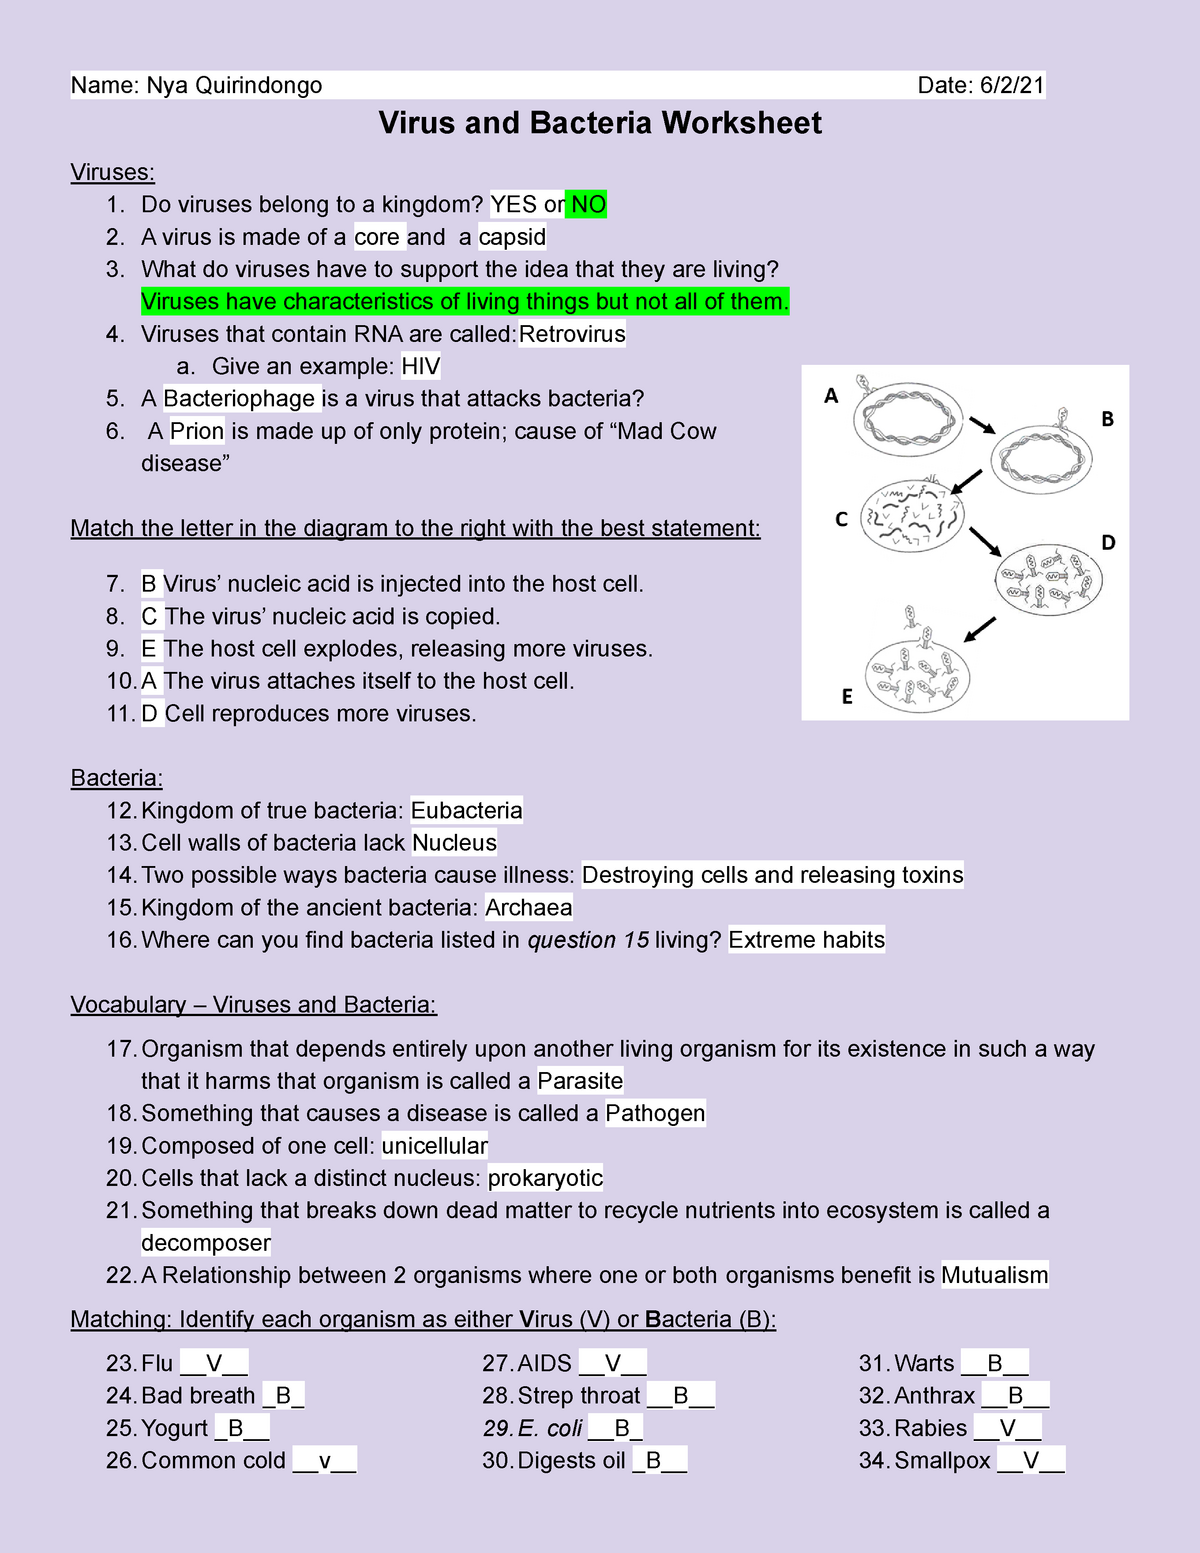 Copy Of Virus And Bacteria Worksheet Name Nya Quirindongo Date 6 2 Virus And Bacteria 